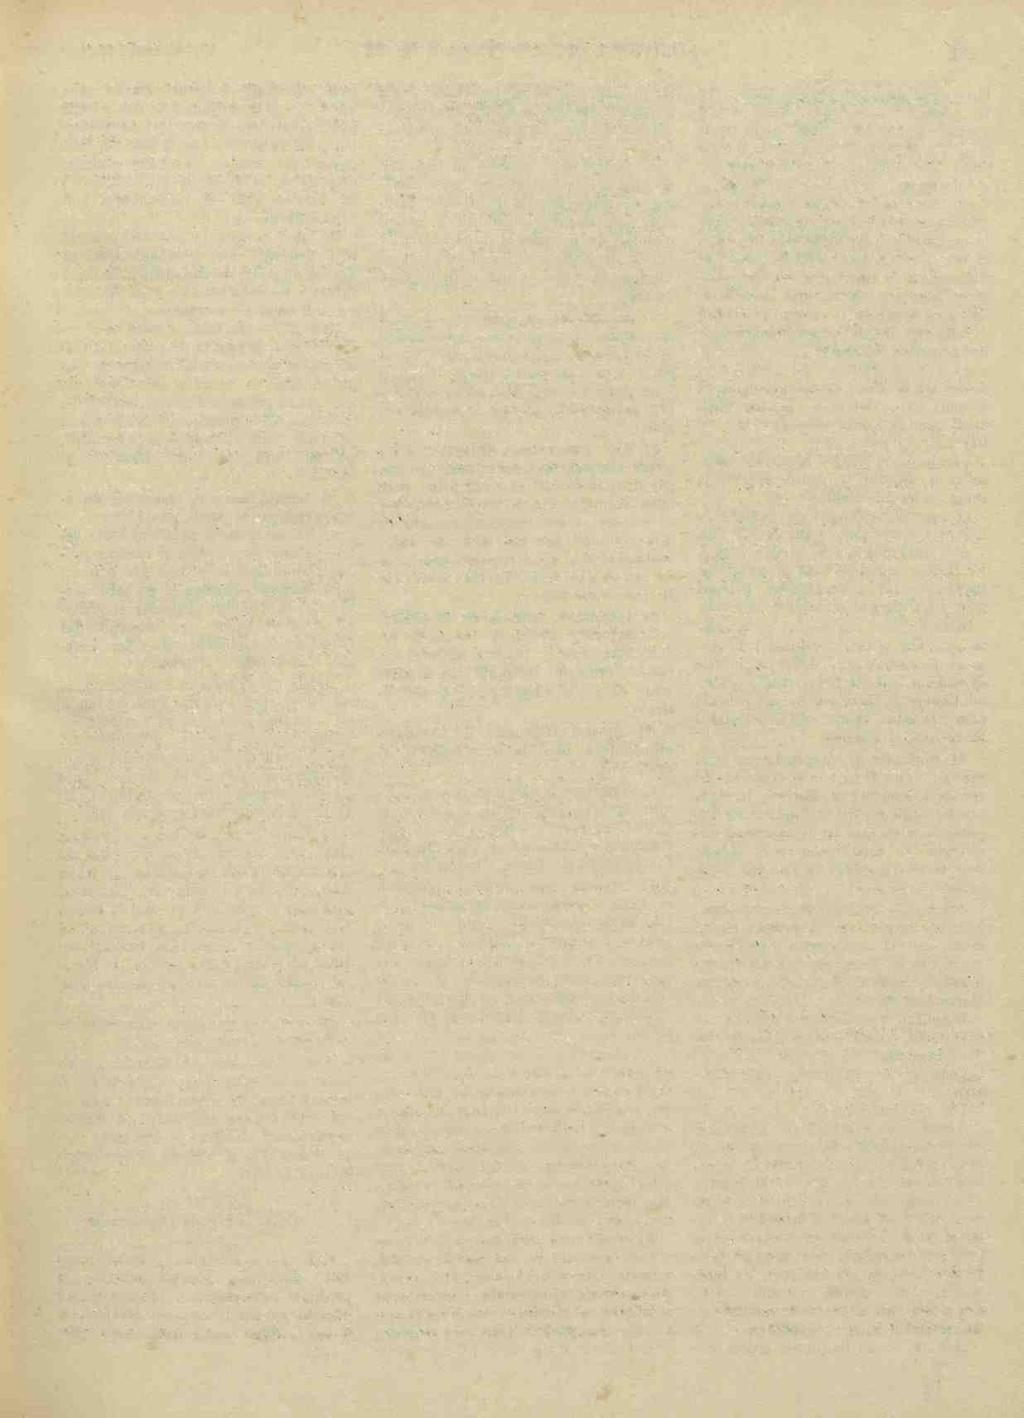 10 Februarie 1941. MONITORUL OFICIAL (Partea I) Nr. 34 691 b) SA aprobe adjuclecari de lieitatii publice In contul ereditelor i alocatiunilor bugetare pinä la suma de lei 7.000.